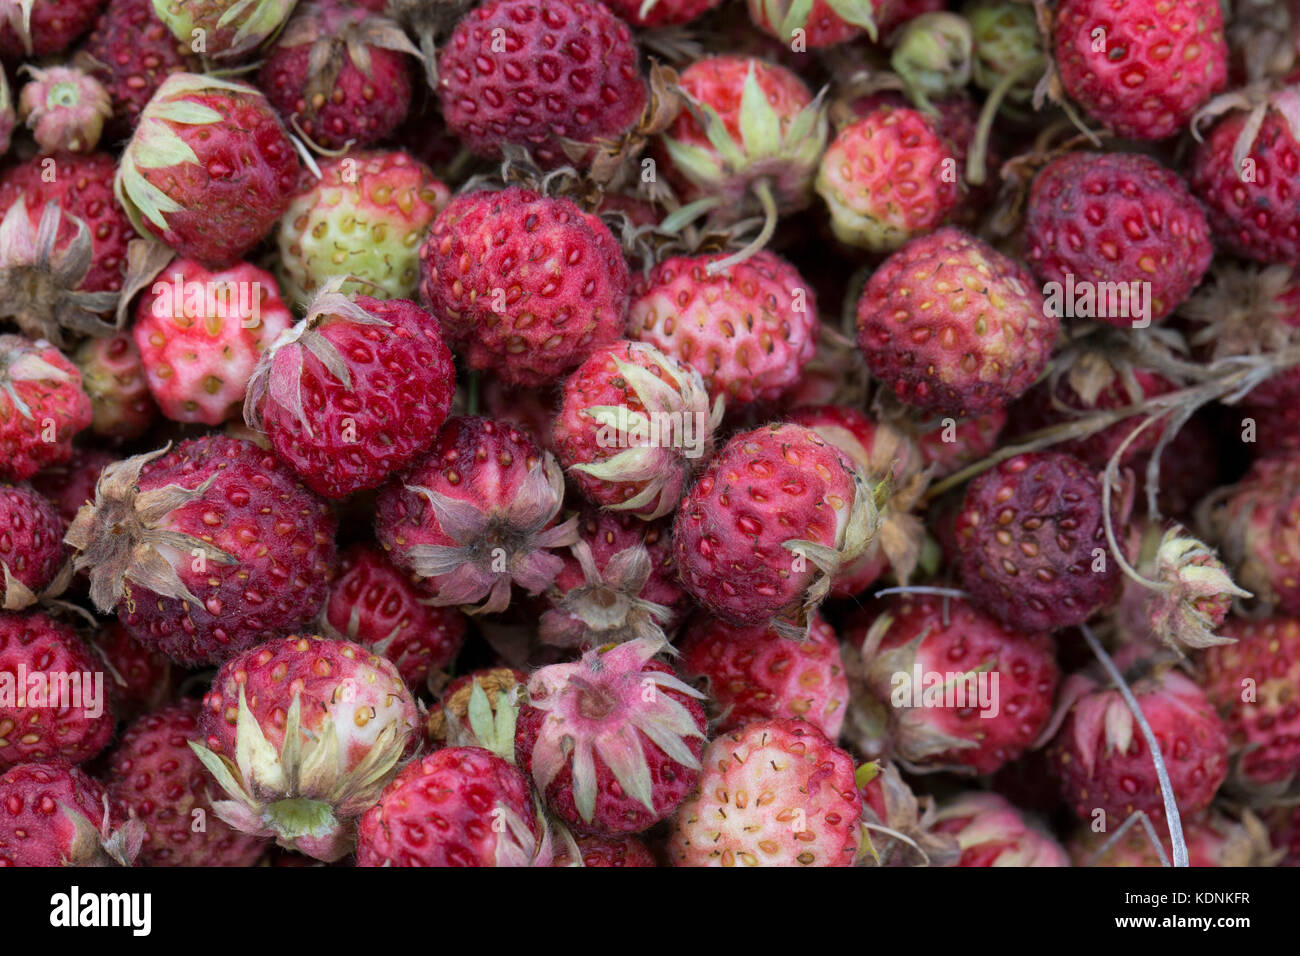 Wiese wild strowberry Hintergrund Stockfoto